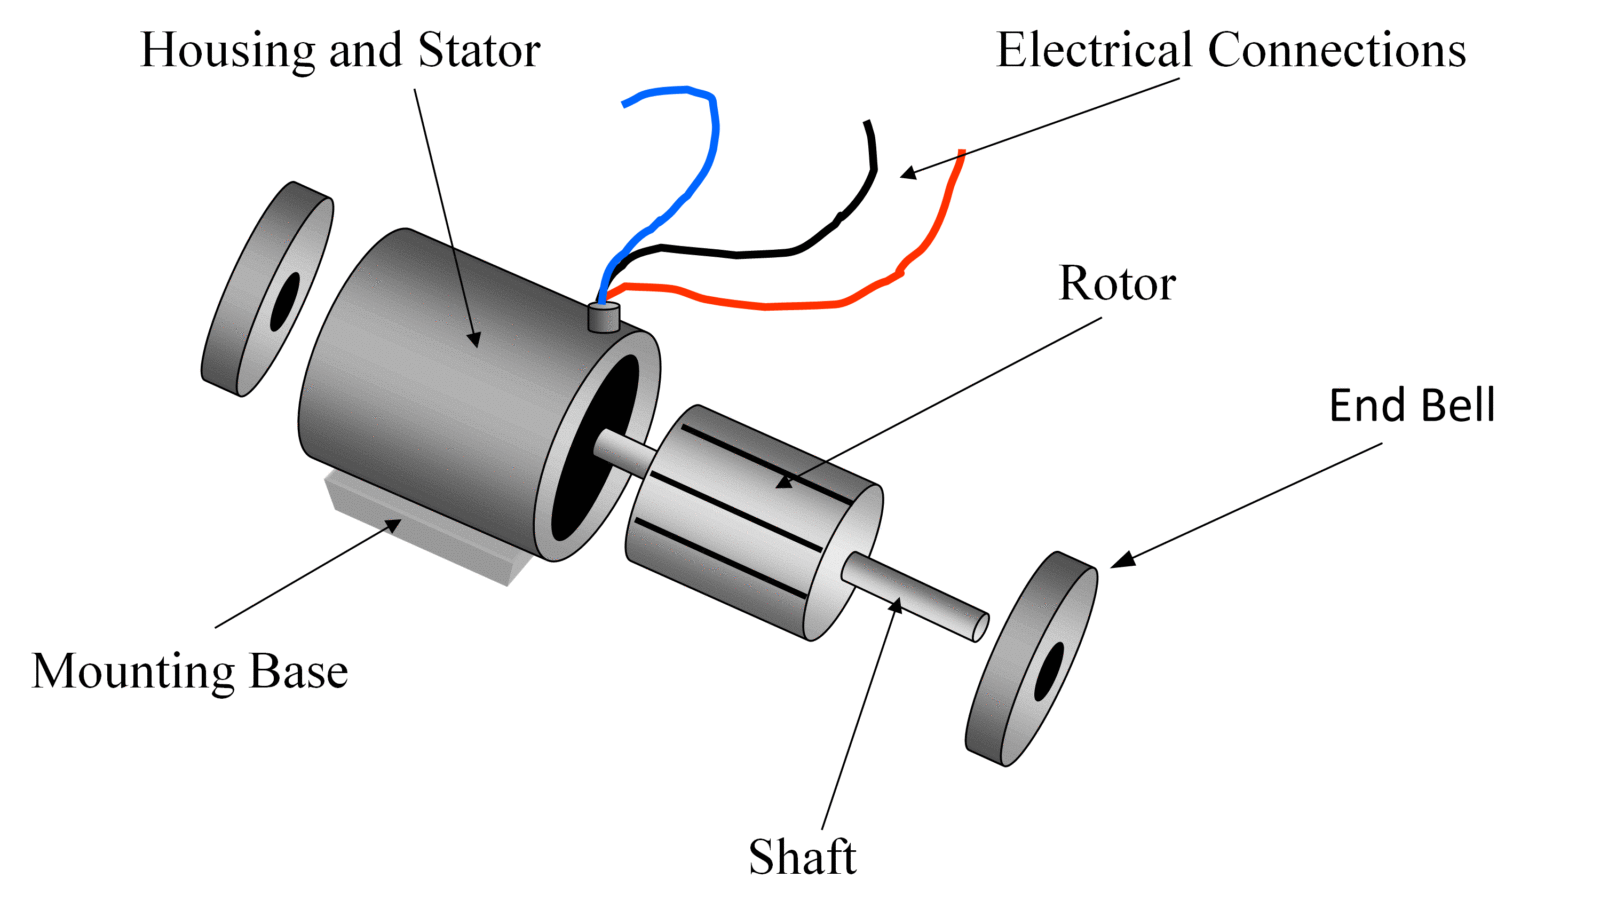 Single phase ac induction motor